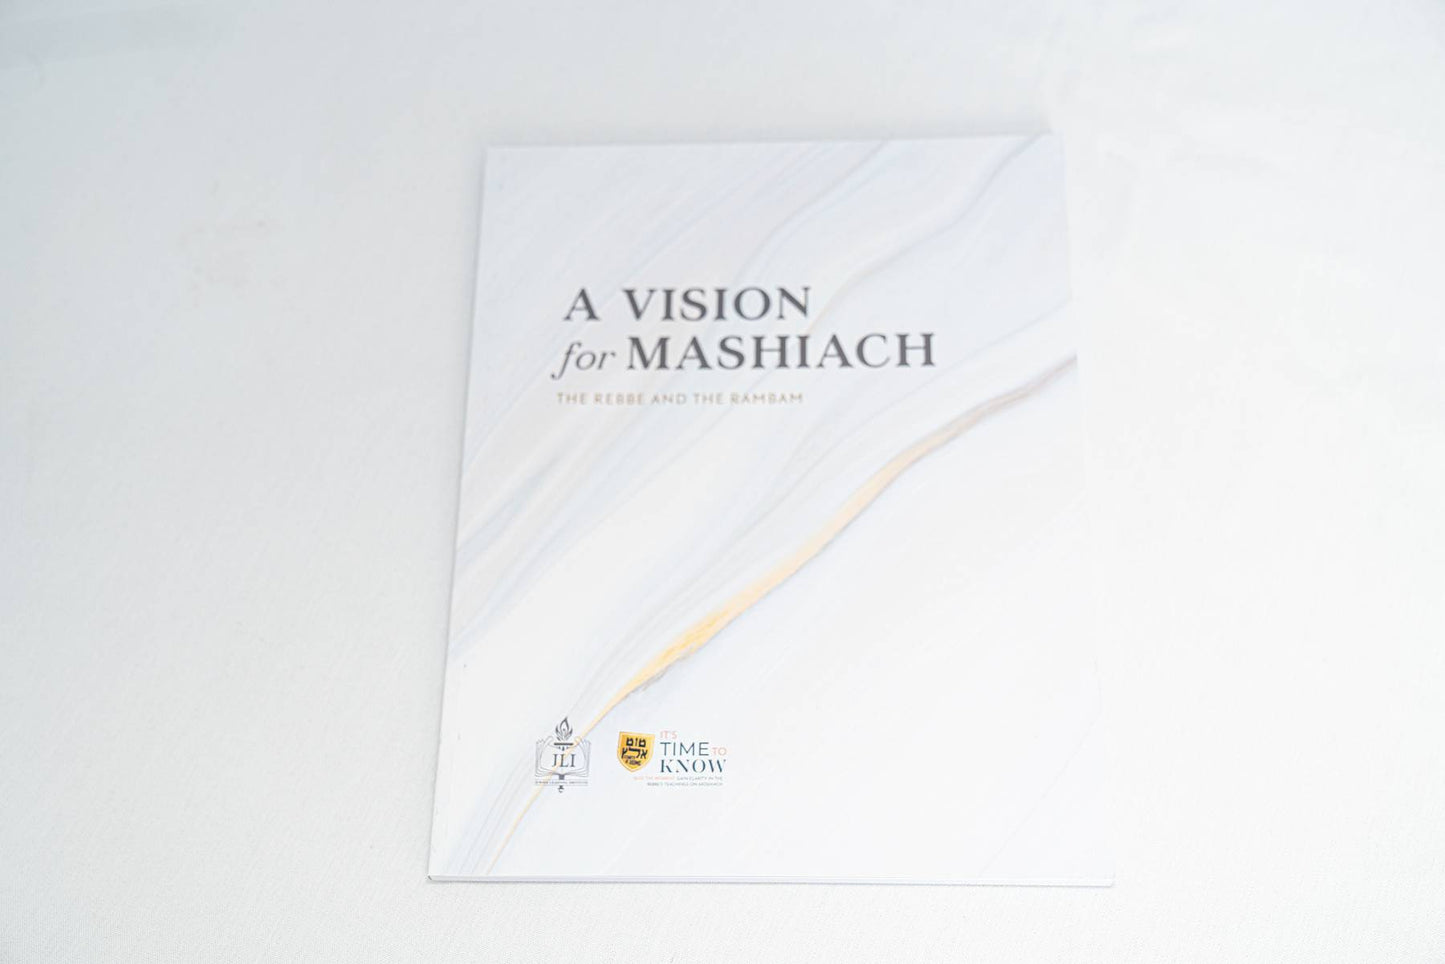 A Vision for Moshiach